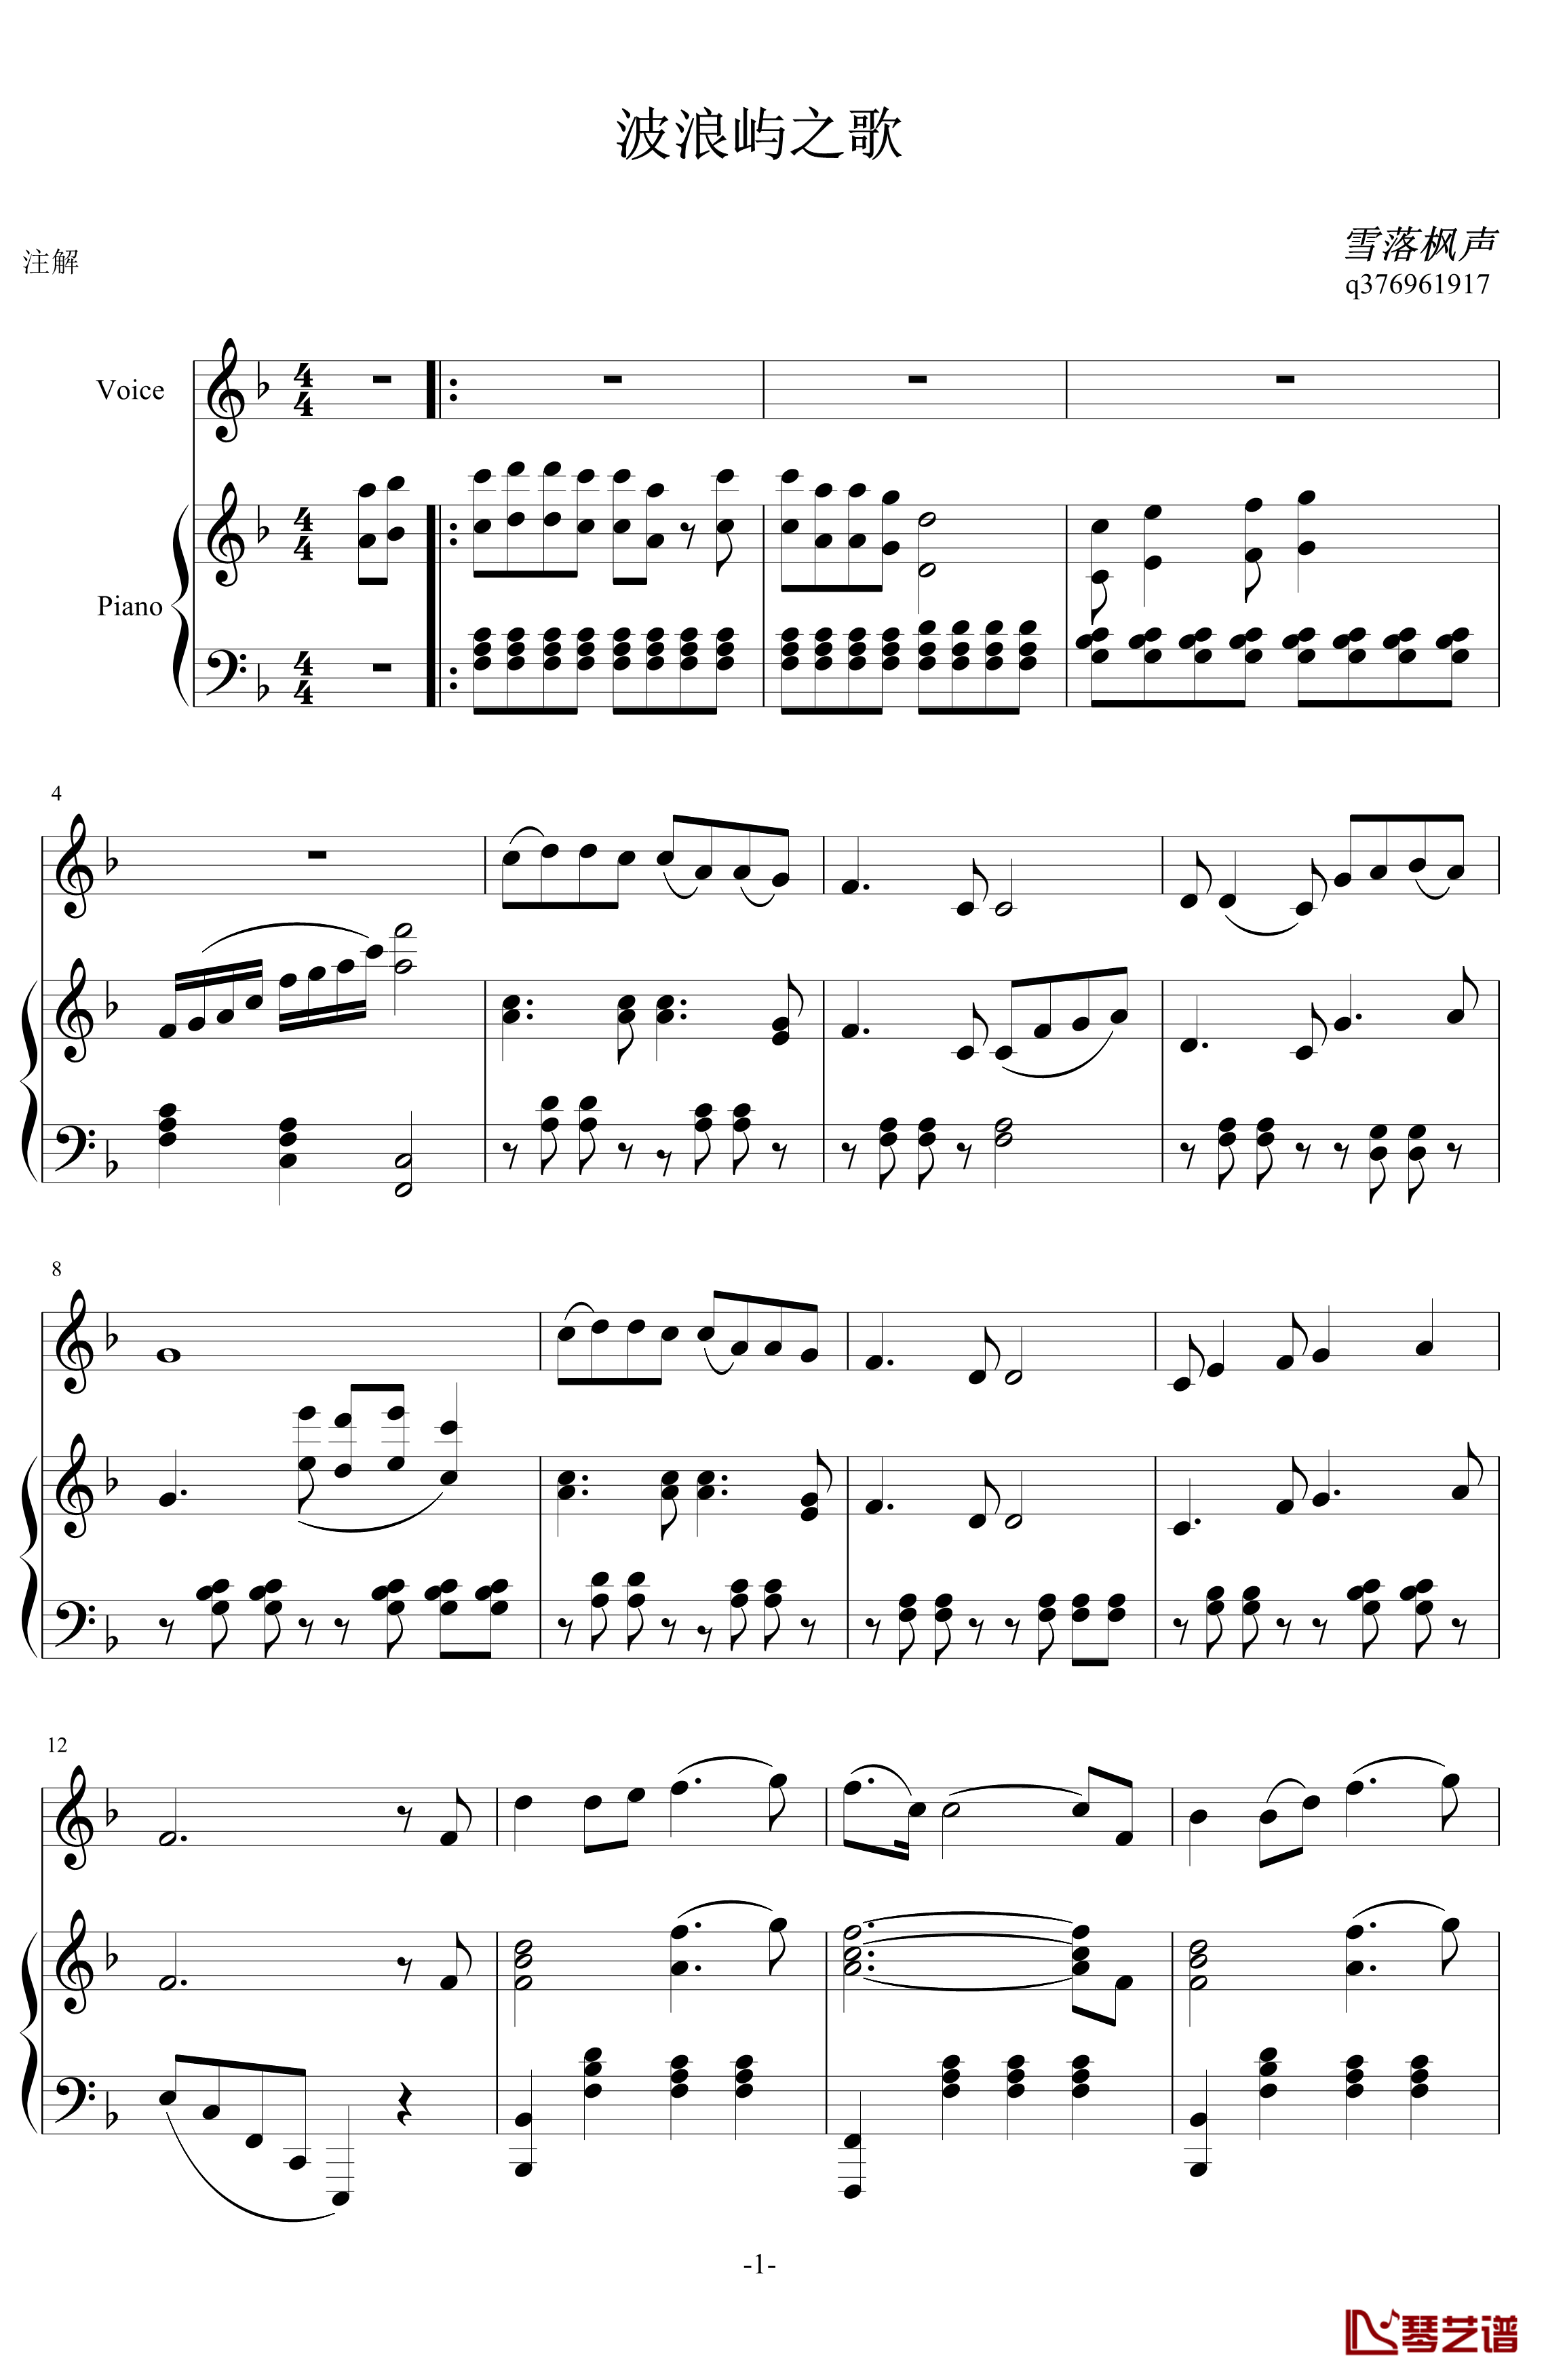 波浪屿之歌钢琴谱-民族音乐1